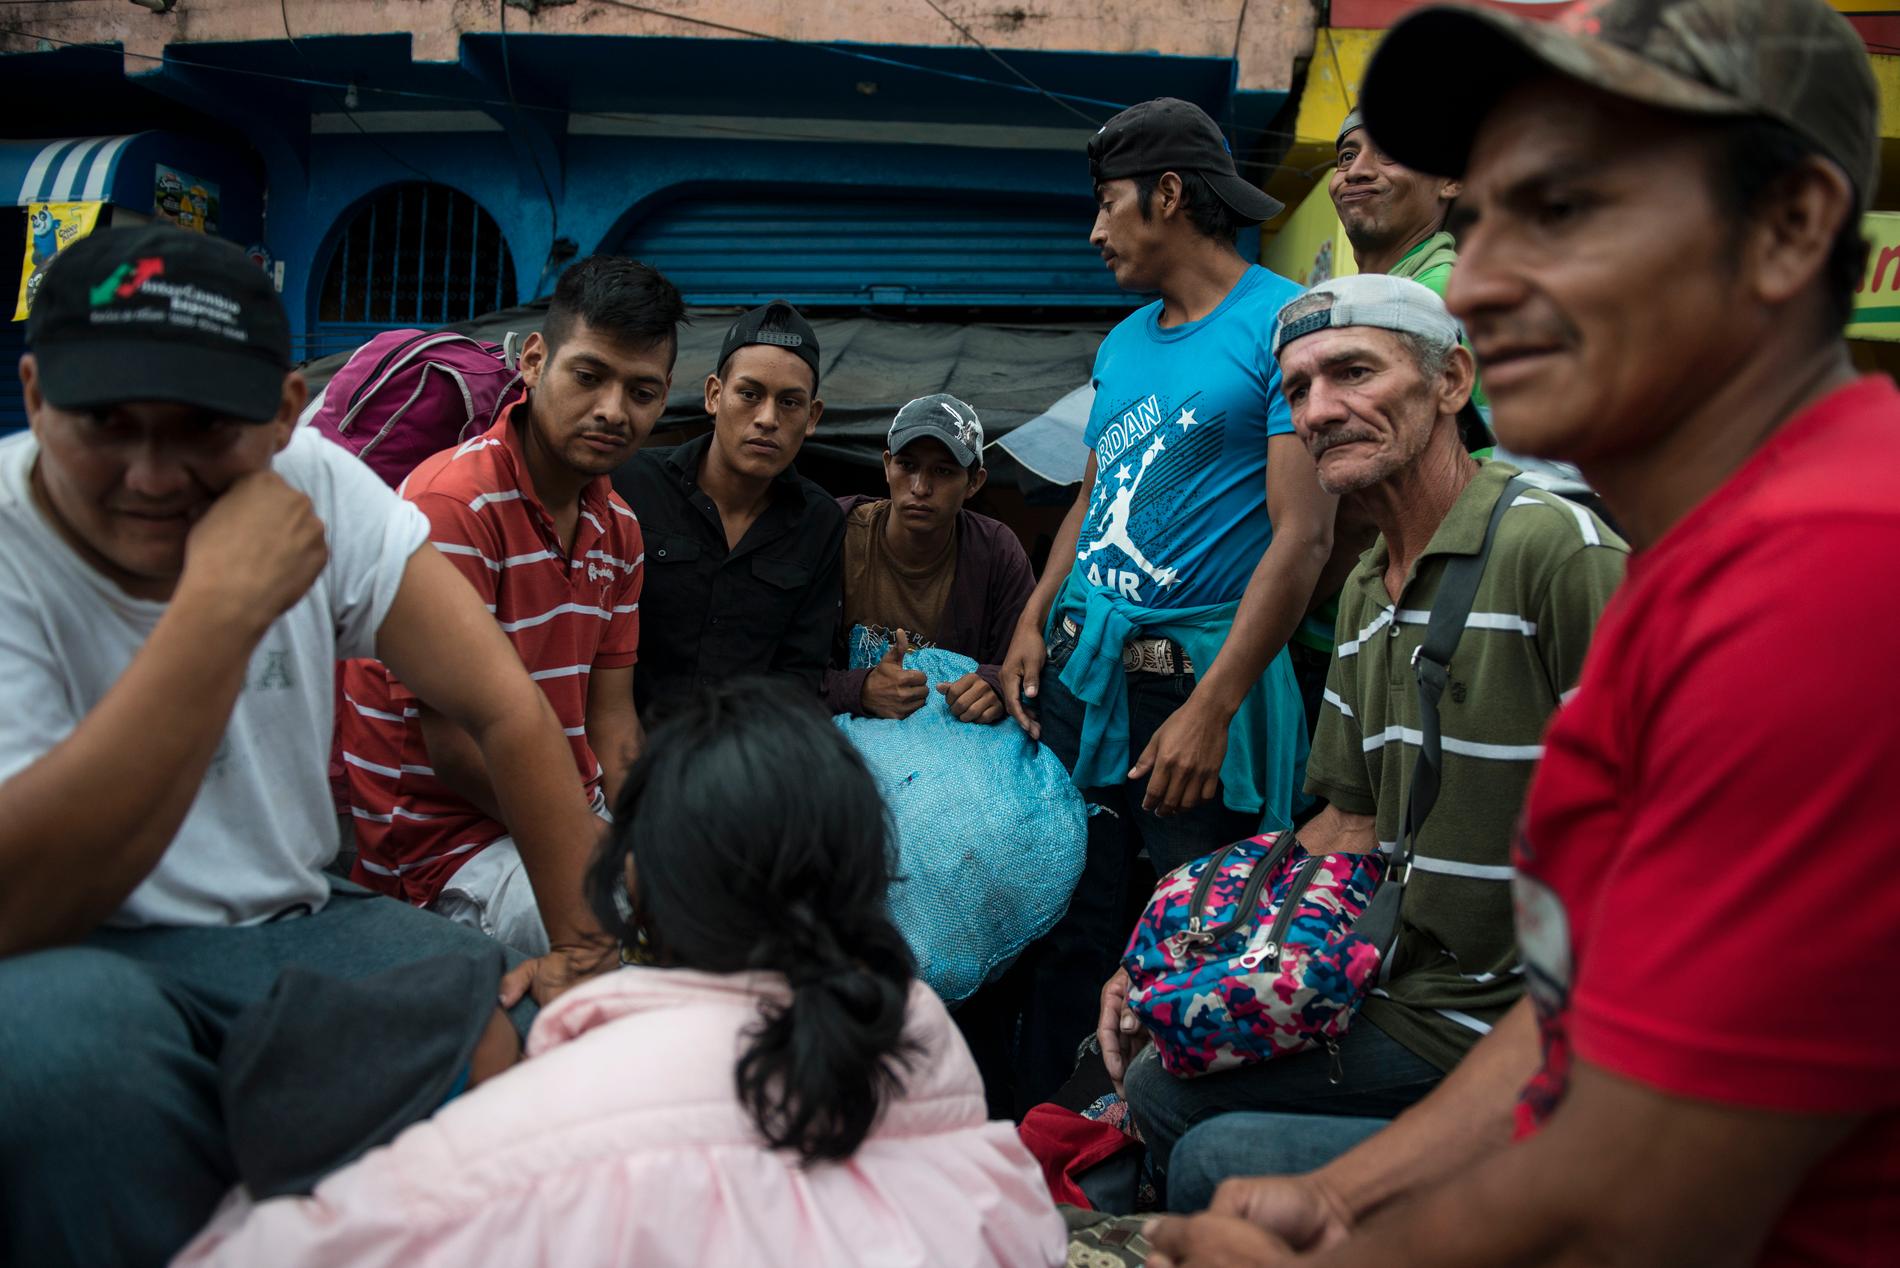 En grupp av migranterna får lift av en lastbil vid Mazatenango, drygt 30 mil från den mexikanska gränsen, under torsdagen.